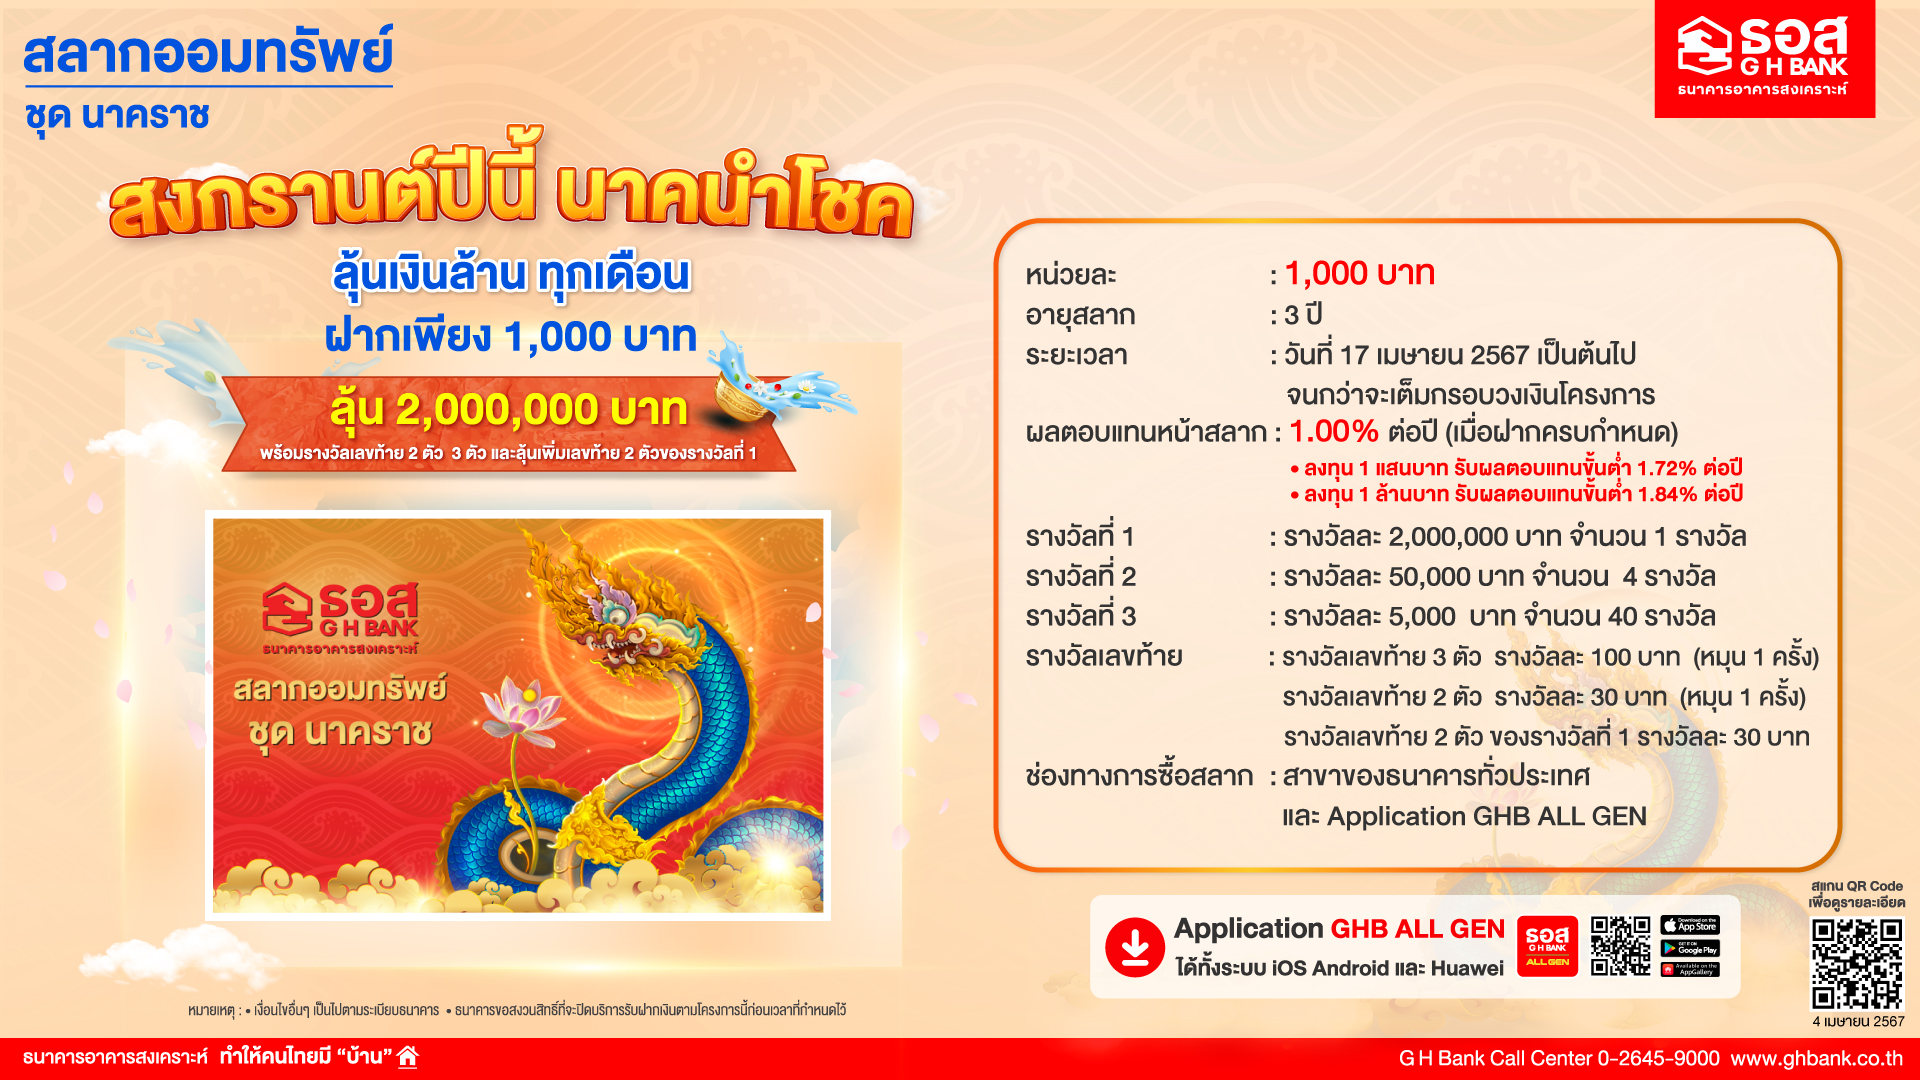 ธอส. ต้อนรับวันปีใหม่ไทย เปิดตัวสลาก “นาคราช” เพียงหน่วยละ 1,000 บาท ดอกเบี้ยสูง